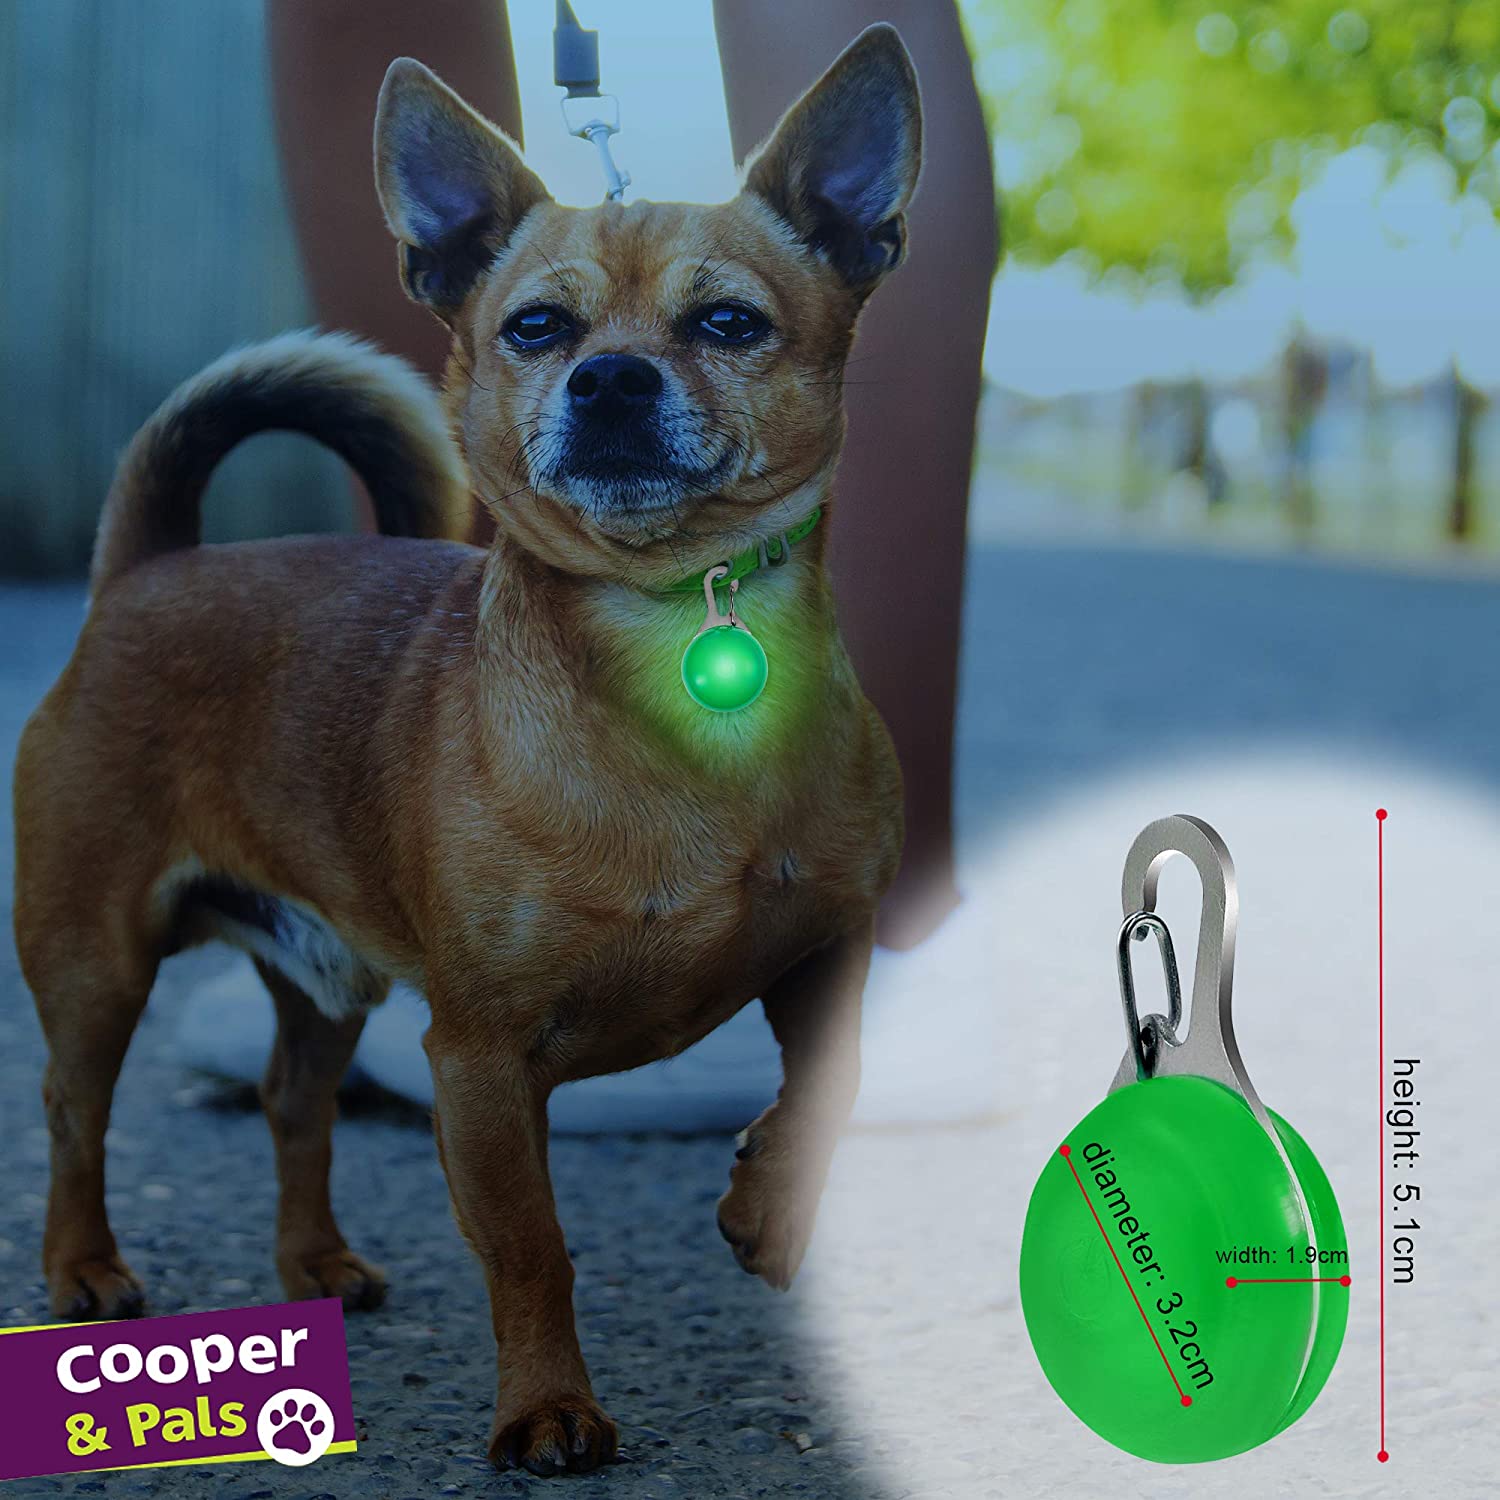  Cooper & Pals Collar para Perros con Luces LED de Seguridad para Mascotas con 3 Modos de Constante, rápido y Lento y se Puede Ver hasta 800 Metros Pack de 6 Verde, Azul y Rojo 